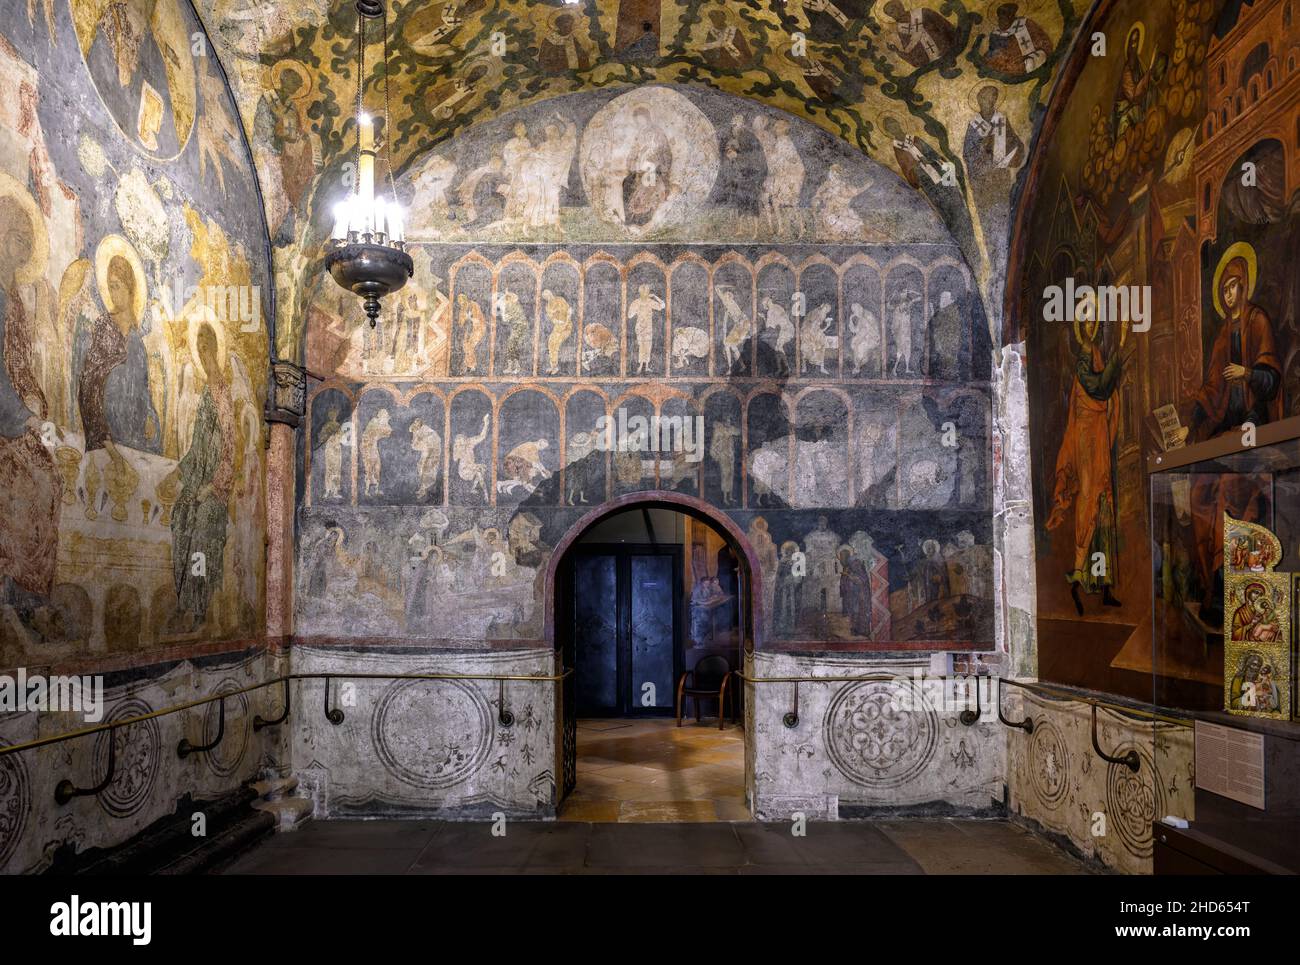 Moskau - 2. Juni 2021: Erzengel-Kathedrale im Moskauer Kreml, Russland. Schöne kunstvoll bemalte Innenraum der orthodoxen Kirche mit alten Fresken. Innen t Stockfoto